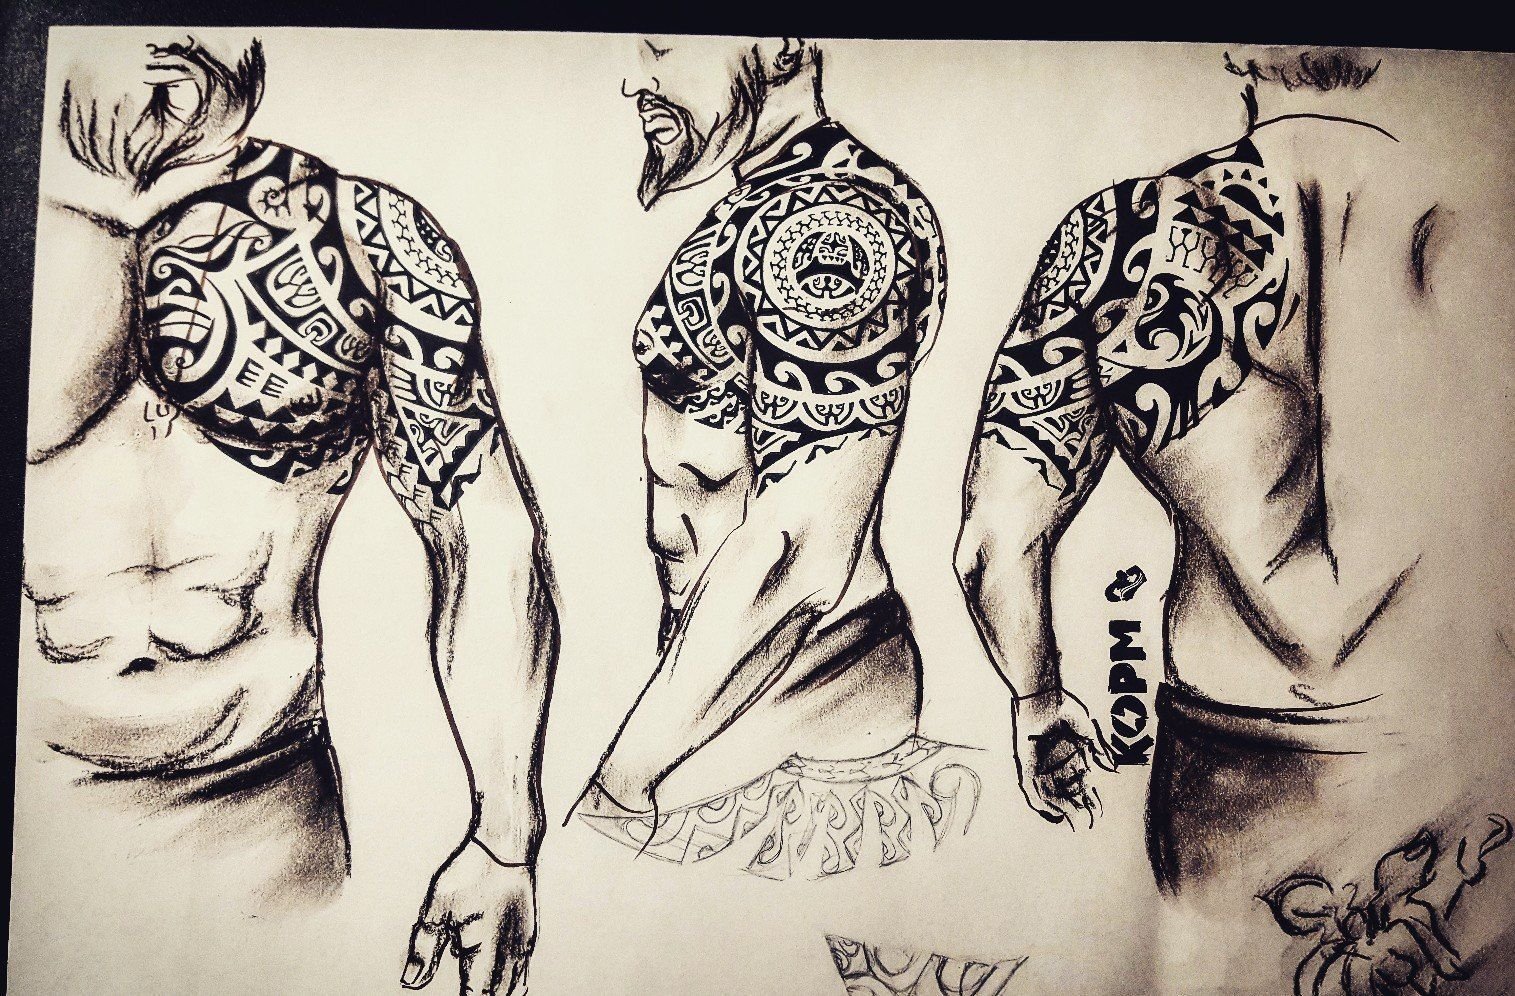 Эскизы мужских татуировок на плече (77 фото)